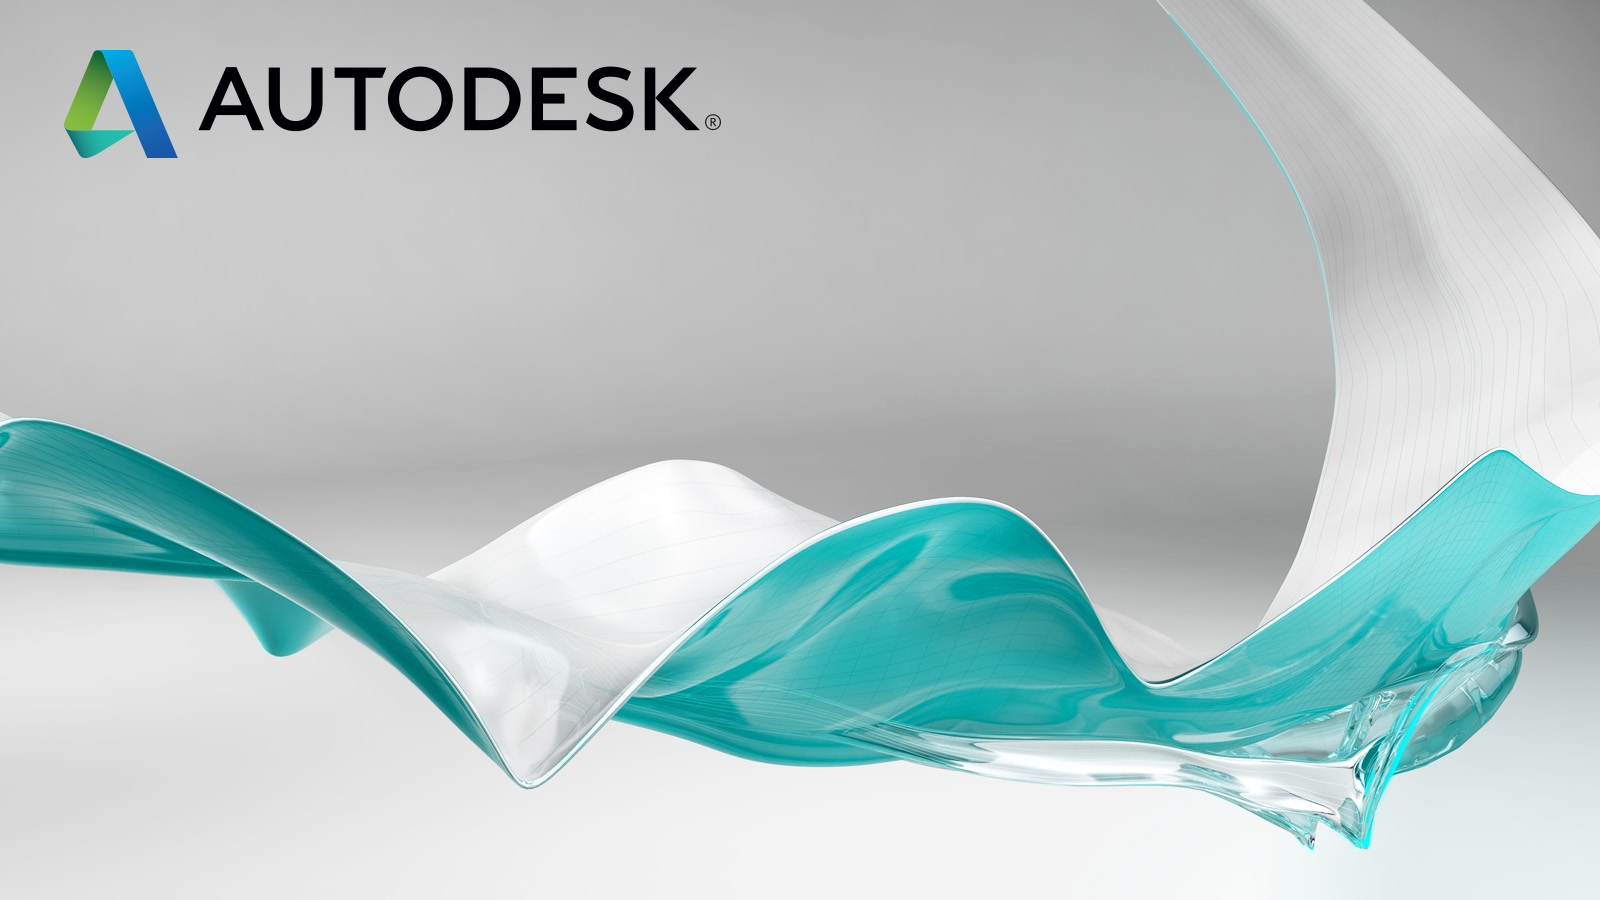 Software de Autodesk para mexico - Adquiere con nosotros la licencia completa de Autodesk, con la que podrás diseñar, editar y producir contenidos profesionales en 2D y 3D - México